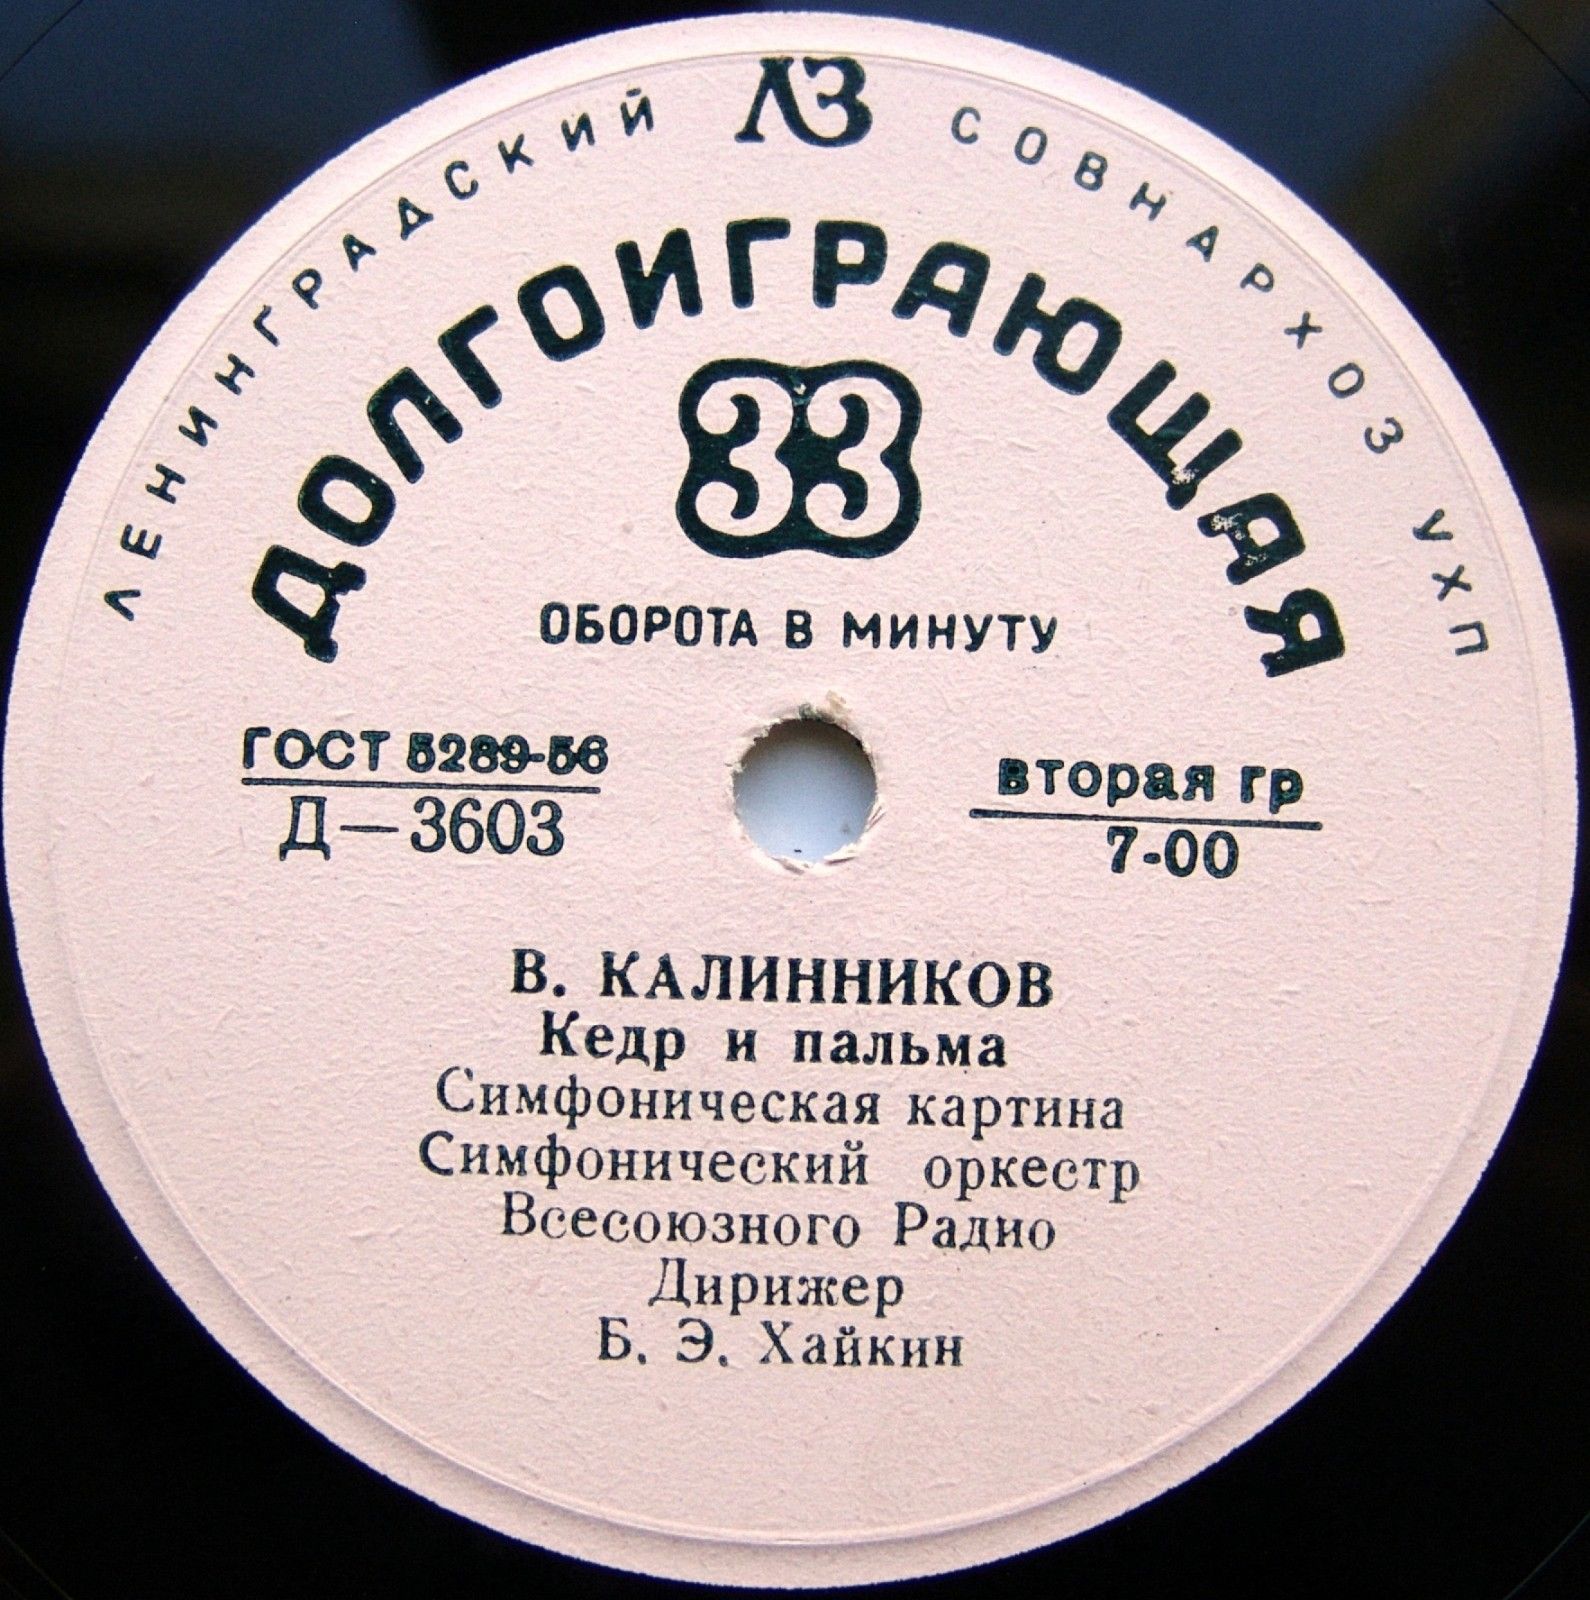 В. КАЛИННИКОВ (1866-1900) "Произведения для симф. оркестра"